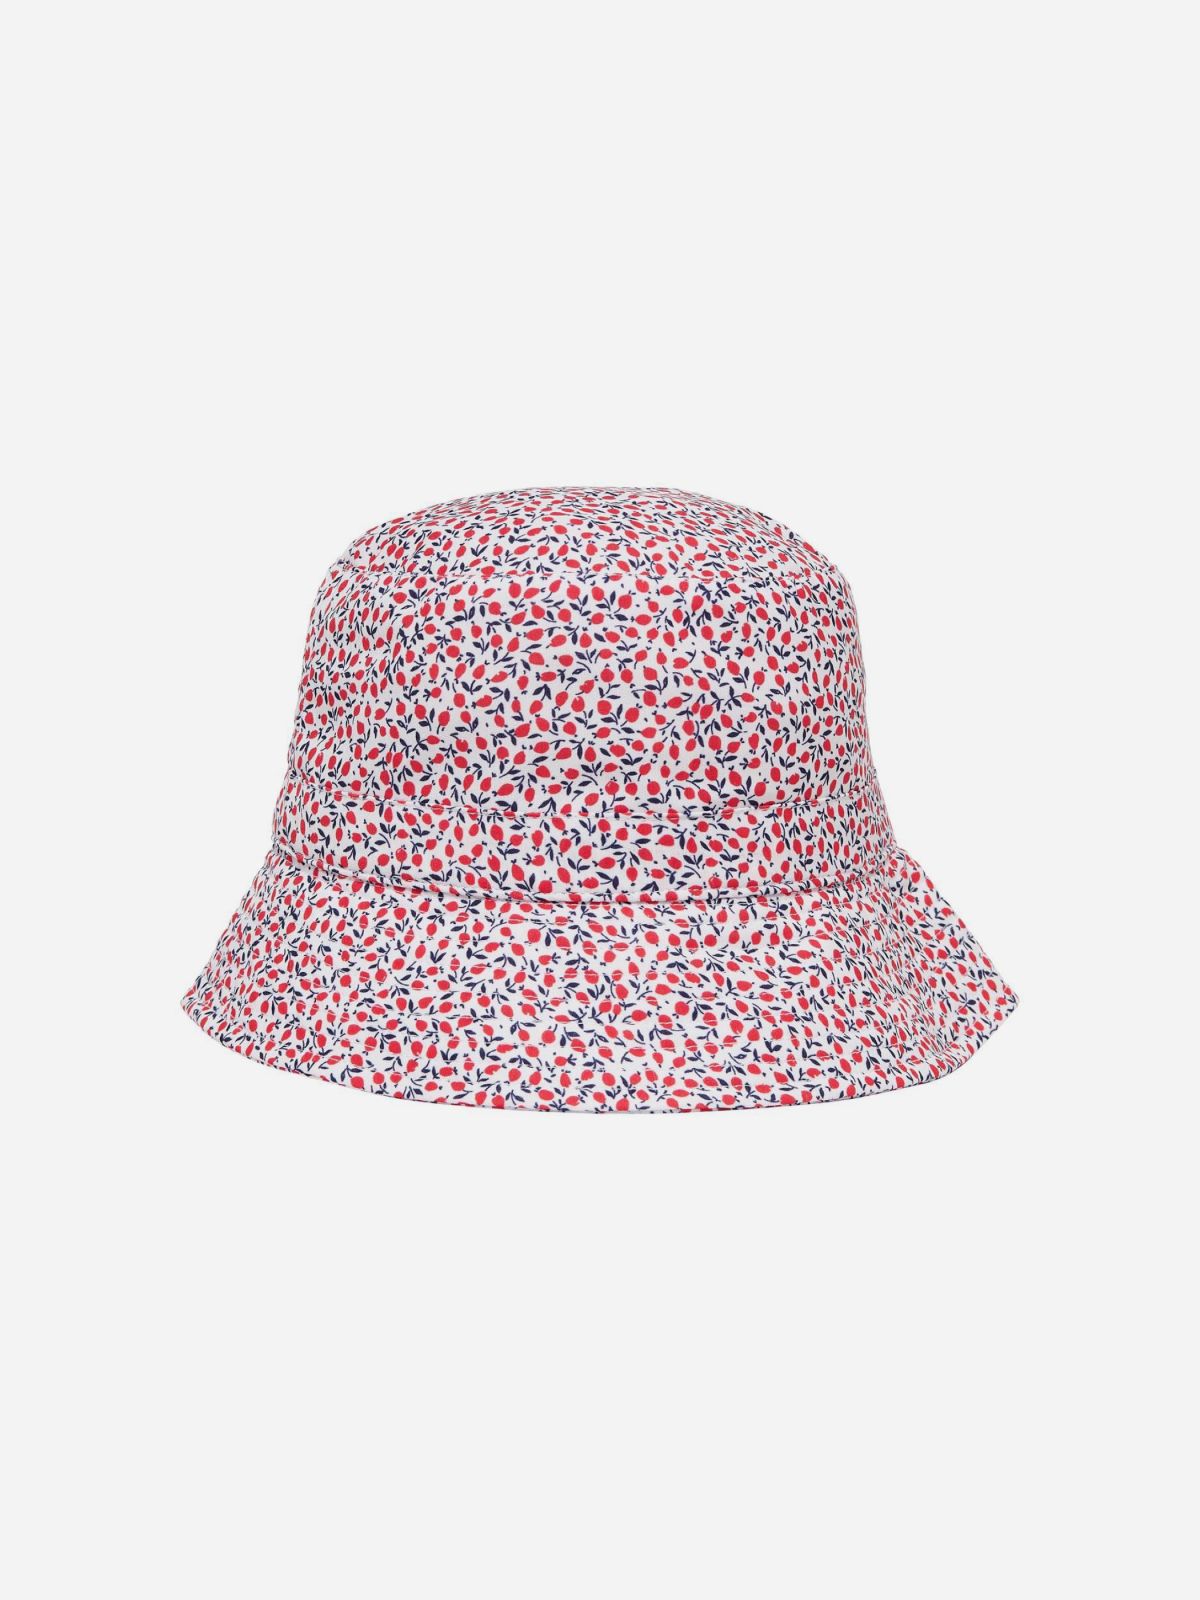  כובע באקט בהדפס פרחים / נשים של ONLY